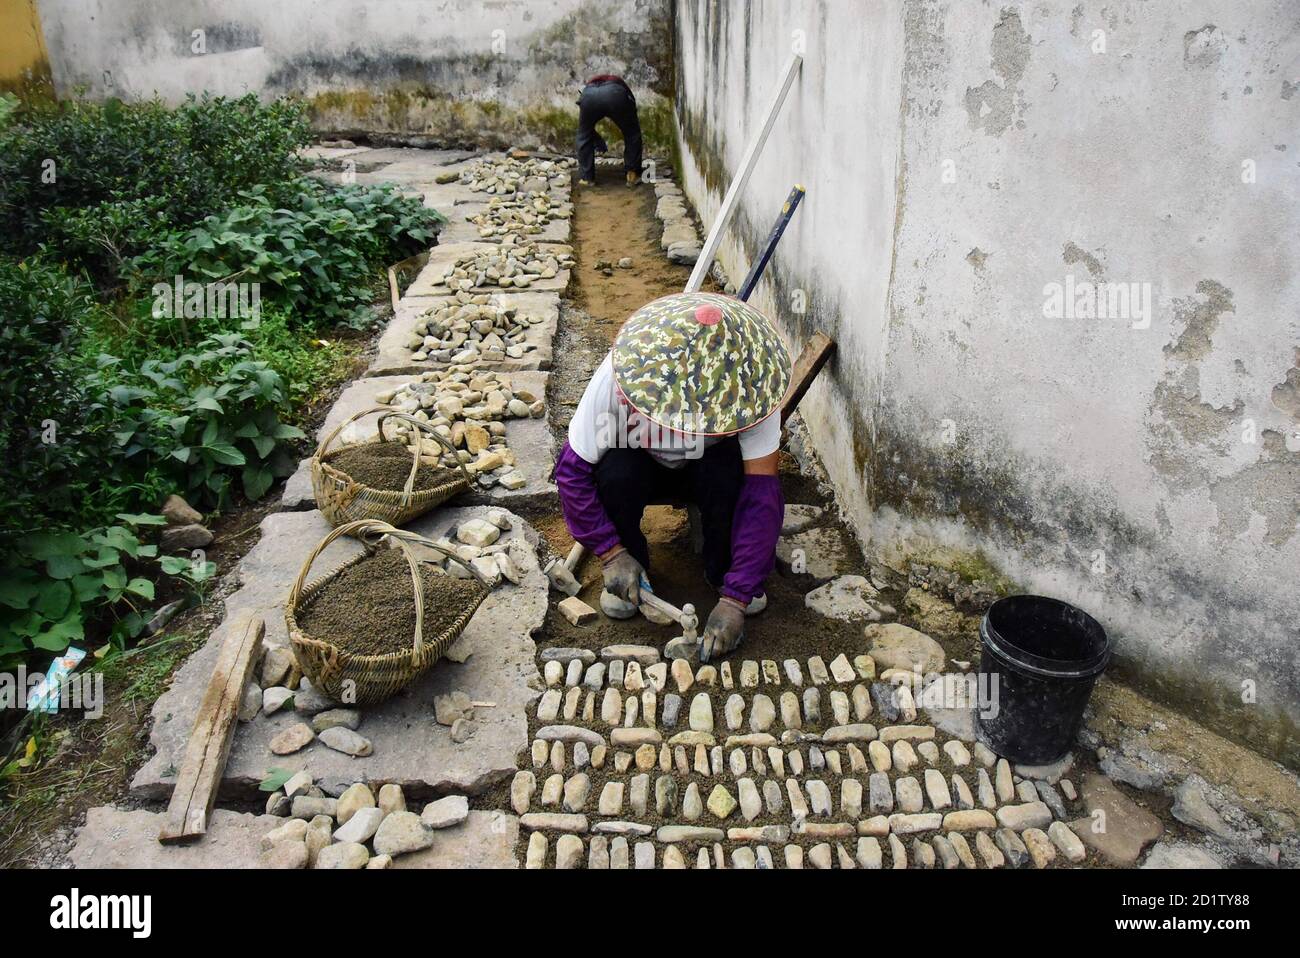 Hangzhou, Chinas Provinz Zhejiang. September 2020. Ein Dorfbewohner ebnet einen Weg mit Steinen im Dorf Gejia im Bezirk Ninghai, ostchinesische Provinz Zhejiang, 17. September 2020. Quelle: Zheng Mengyu/Xinhua/Alamy Live News Stockfoto